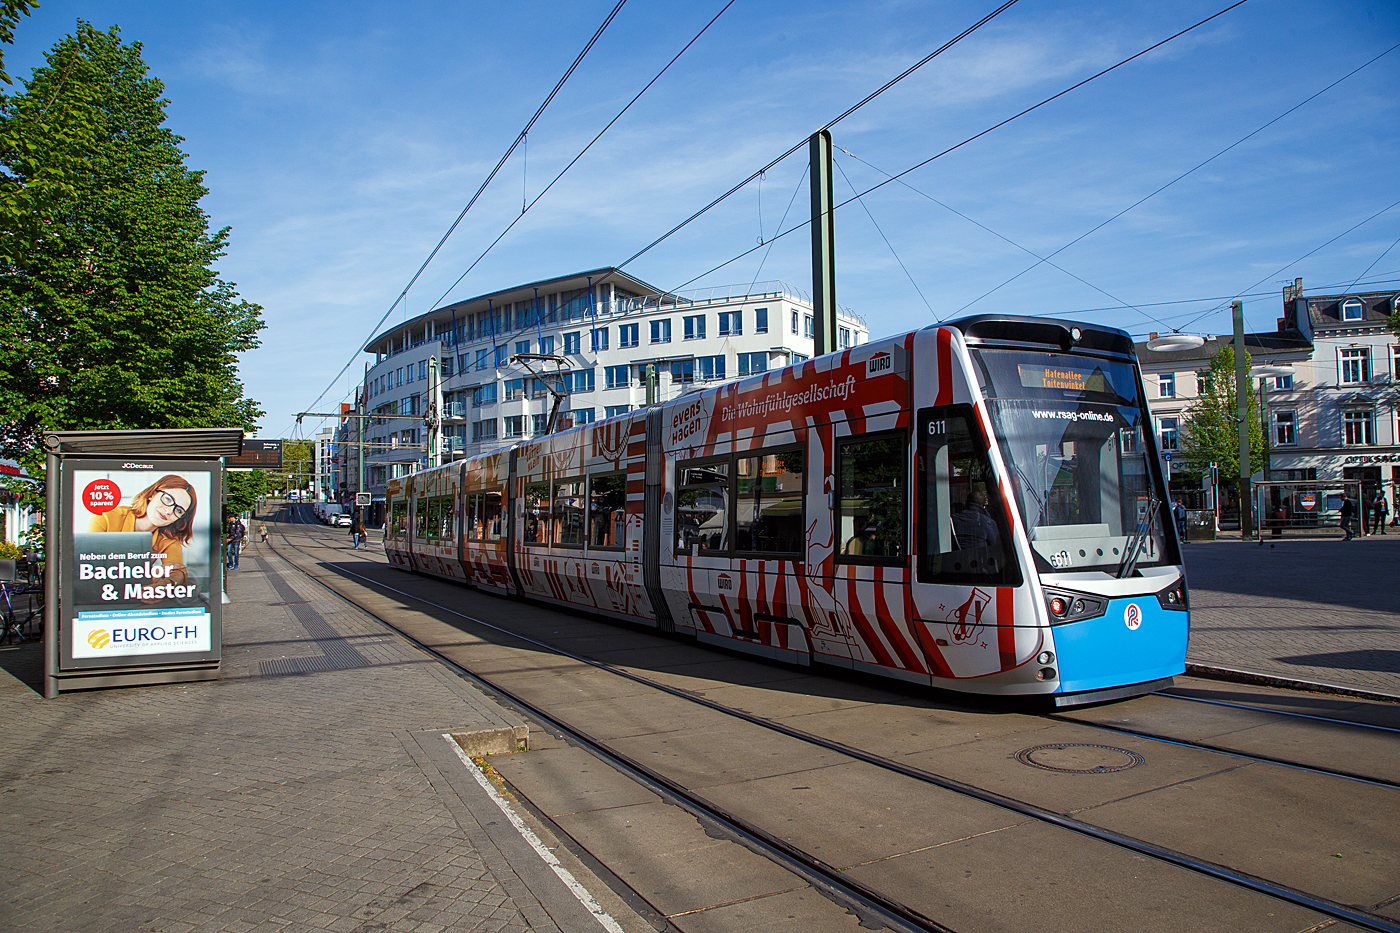 Der 6N2 Niederflur-Multi-Gelenktriebwagen 611, ein Vossloh Tramlink der RSAG (Rostocker Straßenbahn AG) hat am 14 Mai 2022 die Station Doberaner Platz erreicht.

Der 100porzentige Niederflur-Einrichtungs-Triebwagen wurde 2014 von Vossloh Espana (seit 2016 Stadler Rail Valencia), mit der Elektrischen Ausrüstung Vossloh Kiepe (Düsseldorf), gebaut und an die RSAG geliefert.

Die neuen 5-teiligen Multigelenk-Triebfahrzeuge vom Typ Tramlink 6N2 sind 100-prozentigen Niederflurstraßenbahnen, es sind Einrichtungstriebwagen die speziell auf die infrastrukturellen Gegebenheiten und die Charakteristik der Stadt Rostock zugeschnitten wurden.

Dank wassergekühltem Antrieb und der doppelten Federstufe zwischen den Radsätzen und den Wagenkästen sind die Straßenbahnen sehr leise und vibrationsarm und bieten einen hohen Fahrkomfort. Auf dem Fahrzeugdach befindliche Doppelschichtkondensatoren, sogenannte Supercaps, speichern die beim Bremsvorgang entstehende Energie, um diese anschließend wieder zum Anfahren und zur Begrenzung der Anfahrströme sowie für Heizung und Klimatisierung einzusetzen.

Die Innendecke der Straßenbahnen ist als zeitloses Fotodesign konzipiert. Durch dieses Fotodesign wird ein luftiges, großzügiges Raumgefühl geschaffen, welches auch bei hohem Fahrgastaufkommen für das Auge beruhigende Blickpunkte nach oben bietet. Der Innenraum der Straßenbahnen wird dadurch optisch vergrößert.

TECHNISCHE DATEN:
Spurweite: 1.435 mm
Fahrzeuglänge: 32.000 mm
Fahrzeugbreite: 2.650 mm
Fahrzeughöhe: 3.510 mm
Einstiegshöhe: 290 mm
Anteil Niederflur: 100 %
Leergewicht: 41,8 t
Türen: 6 (nur an der rechten Fahrzeugseite)
Sitzplätze: 71
Stehplätze: 139 (4 Pers./m²)
Raddurchmesser: 600 mm (neu) / 520 mm (abgenutzt)
Fahrdrahtspannung: DC 600 V; umschaltbar auf DC 750 V
Antrieb: 4 x 100 kW
Höchstgeschwindigkeit: 70 km/h
Zulassung: BOStrab
Besonderheiten: Energiespeicher zur Reduzierung der Anfahrströme

Die Straßenbahn Rostock ist neben der Straßenbahn in Schwerin die einzige noch bestehende in Mecklenburg-Vorpommern. Das Netz umfasst eine Streckenlänge von 35,6 Kilometer und 64 Haltestellen. Die erste Pferdebahn fuhr 1881 in der Innenstadt, die weiterhin das Zentrum des Netzes darstellt. Bis 2006 wurde das Netz nach und nach erweitert, sodass der Busverkehr nur noch die Hälfte des Verkehrsbedarfes abdecken muss. Seit 1992 kommen auch Niederflur-Gelenkwagen zum Einsatz. Seit etwa 2003 kann man bei sämtlichen Fahrten barrierefrei einsteigen.